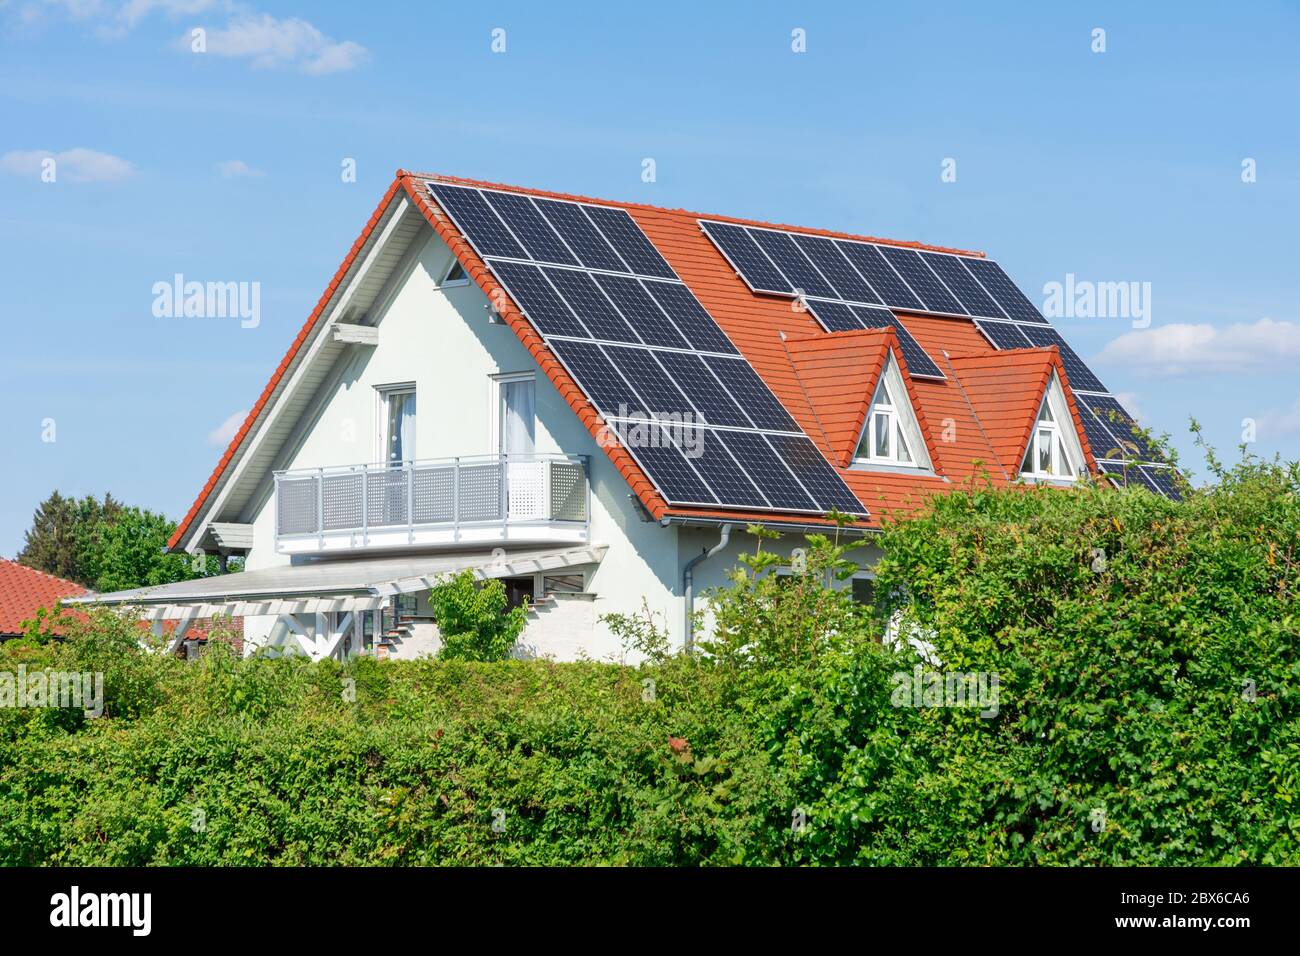 Maison moderne avec les cellules solaires photovoltaïques sur le toit pour la production d'énergie de remplacement Banque D'Images